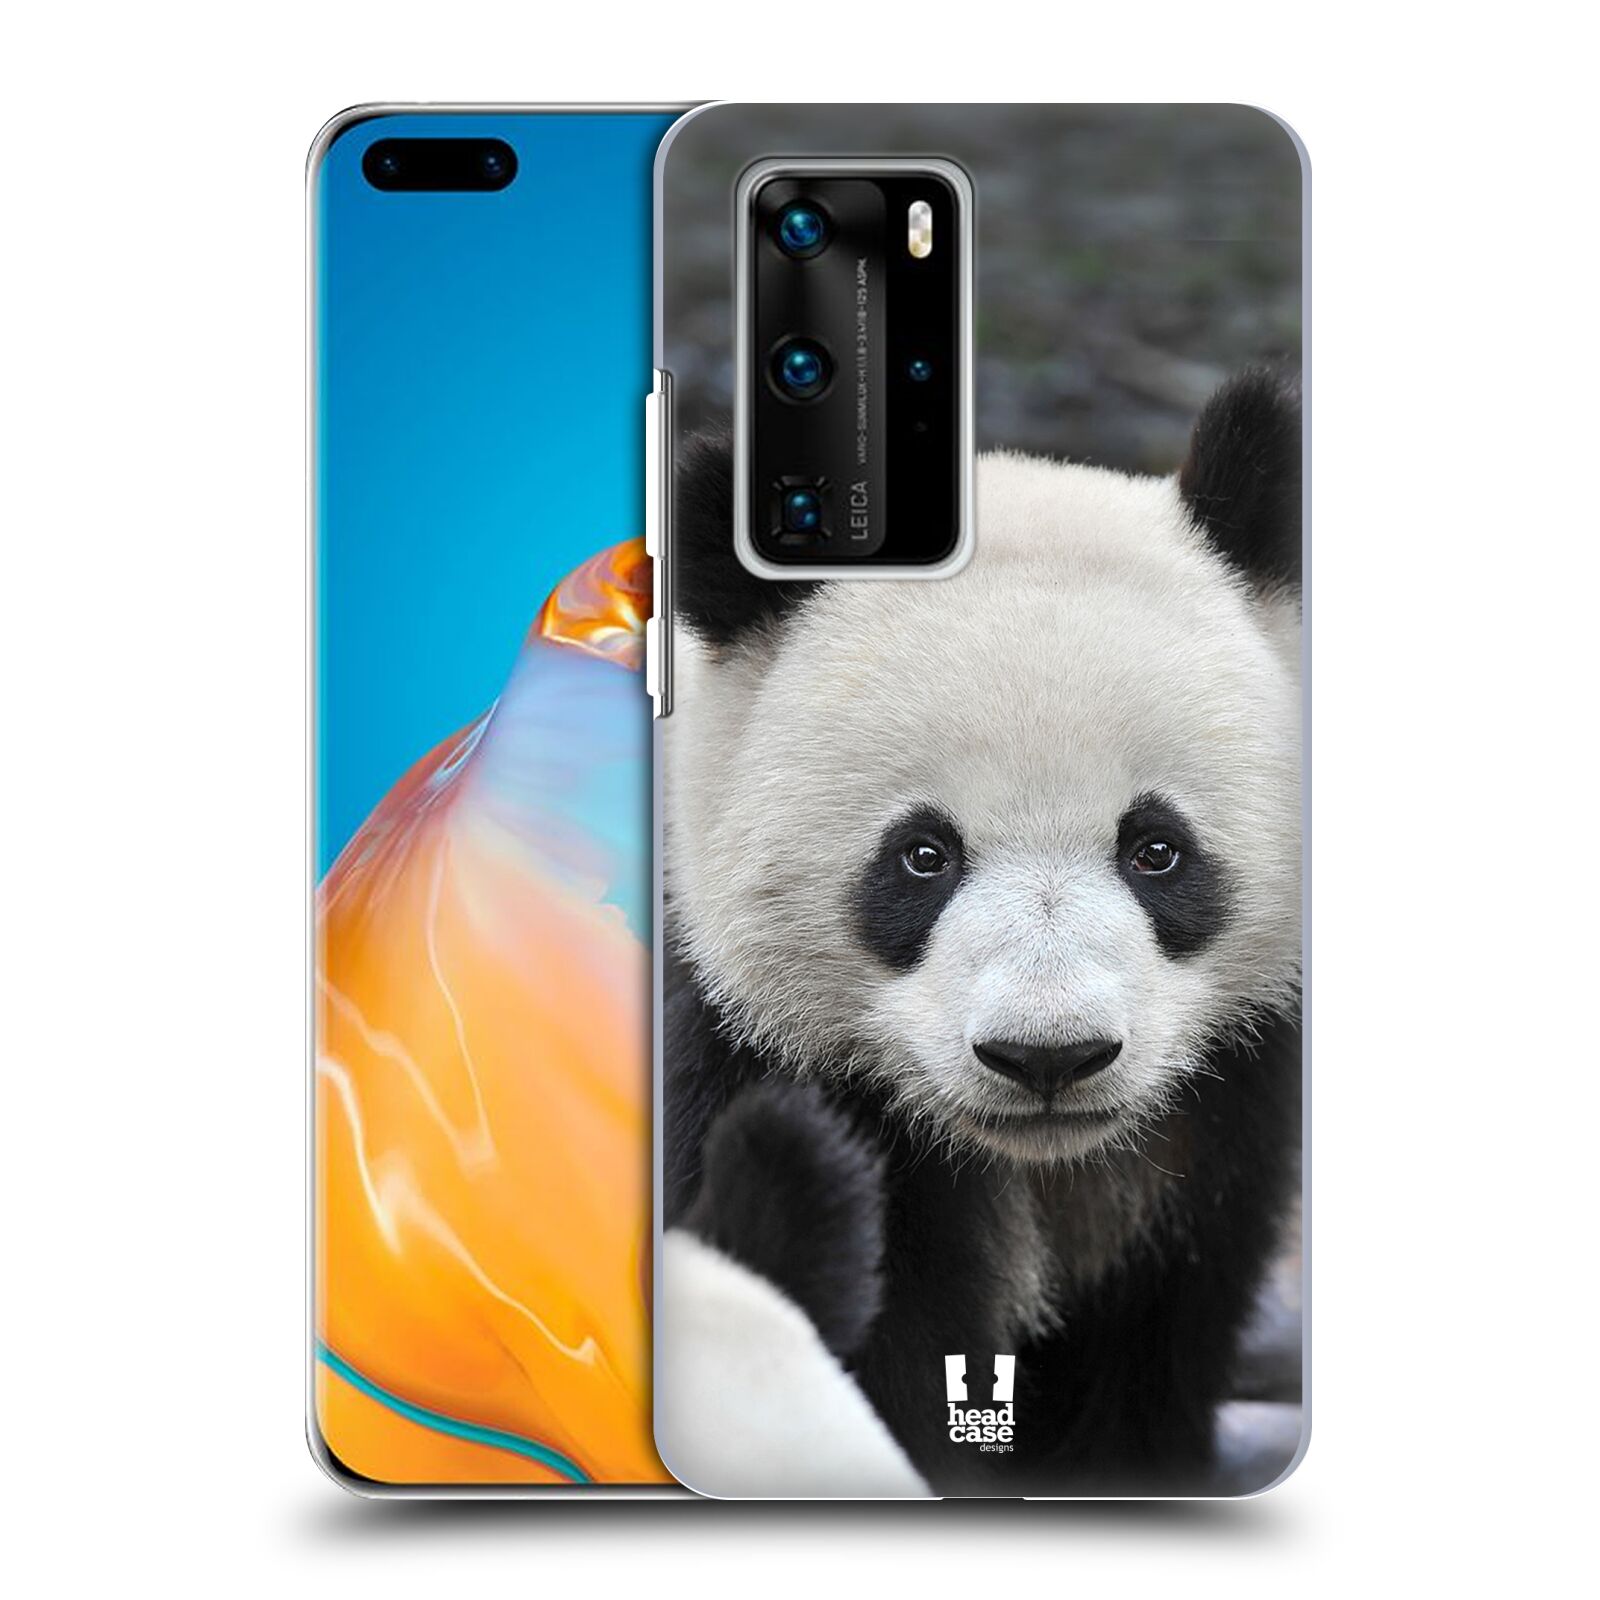 Zadní obal pro mobil Huawei P40 PRO / P40 PRO PLUS - HEAD CASE - Svět zvířat medvěd panda